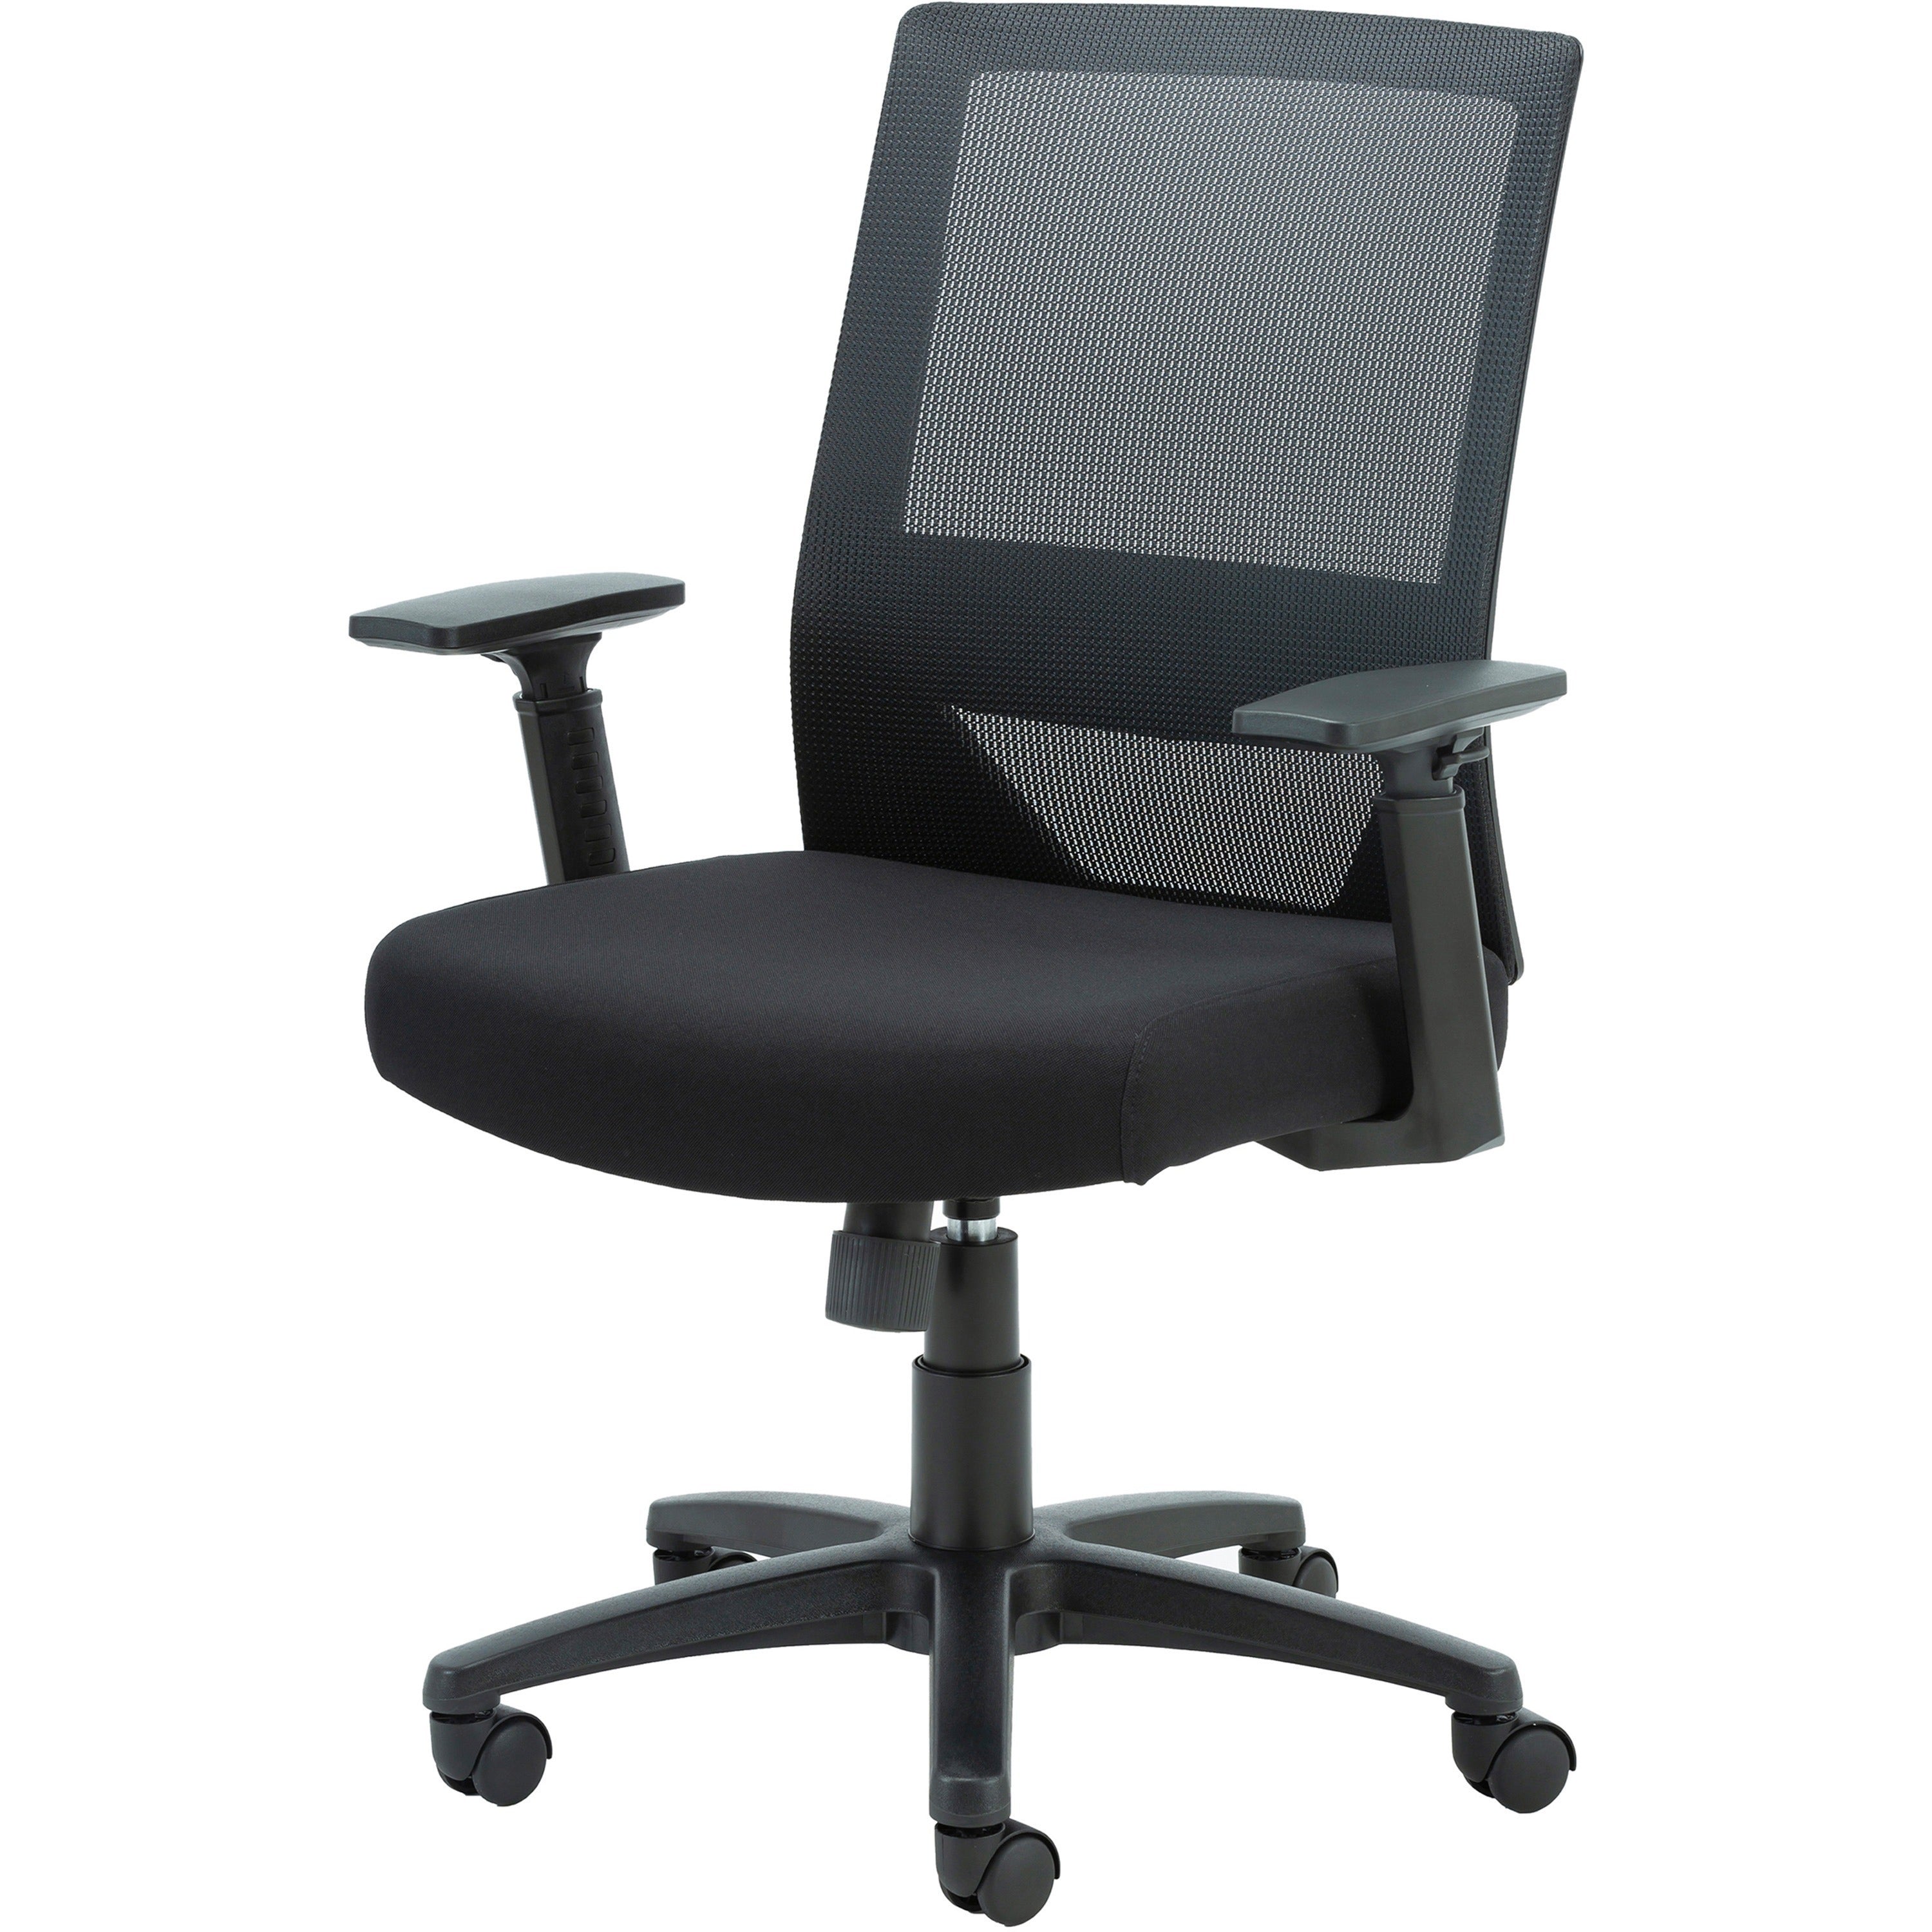 lorell-soho-mesh-mid-back-task-chair-gray-fabric-seat-gray-fabric-back-mid-back-5-star-base-black-armrest-1-each_llr41840 - 4